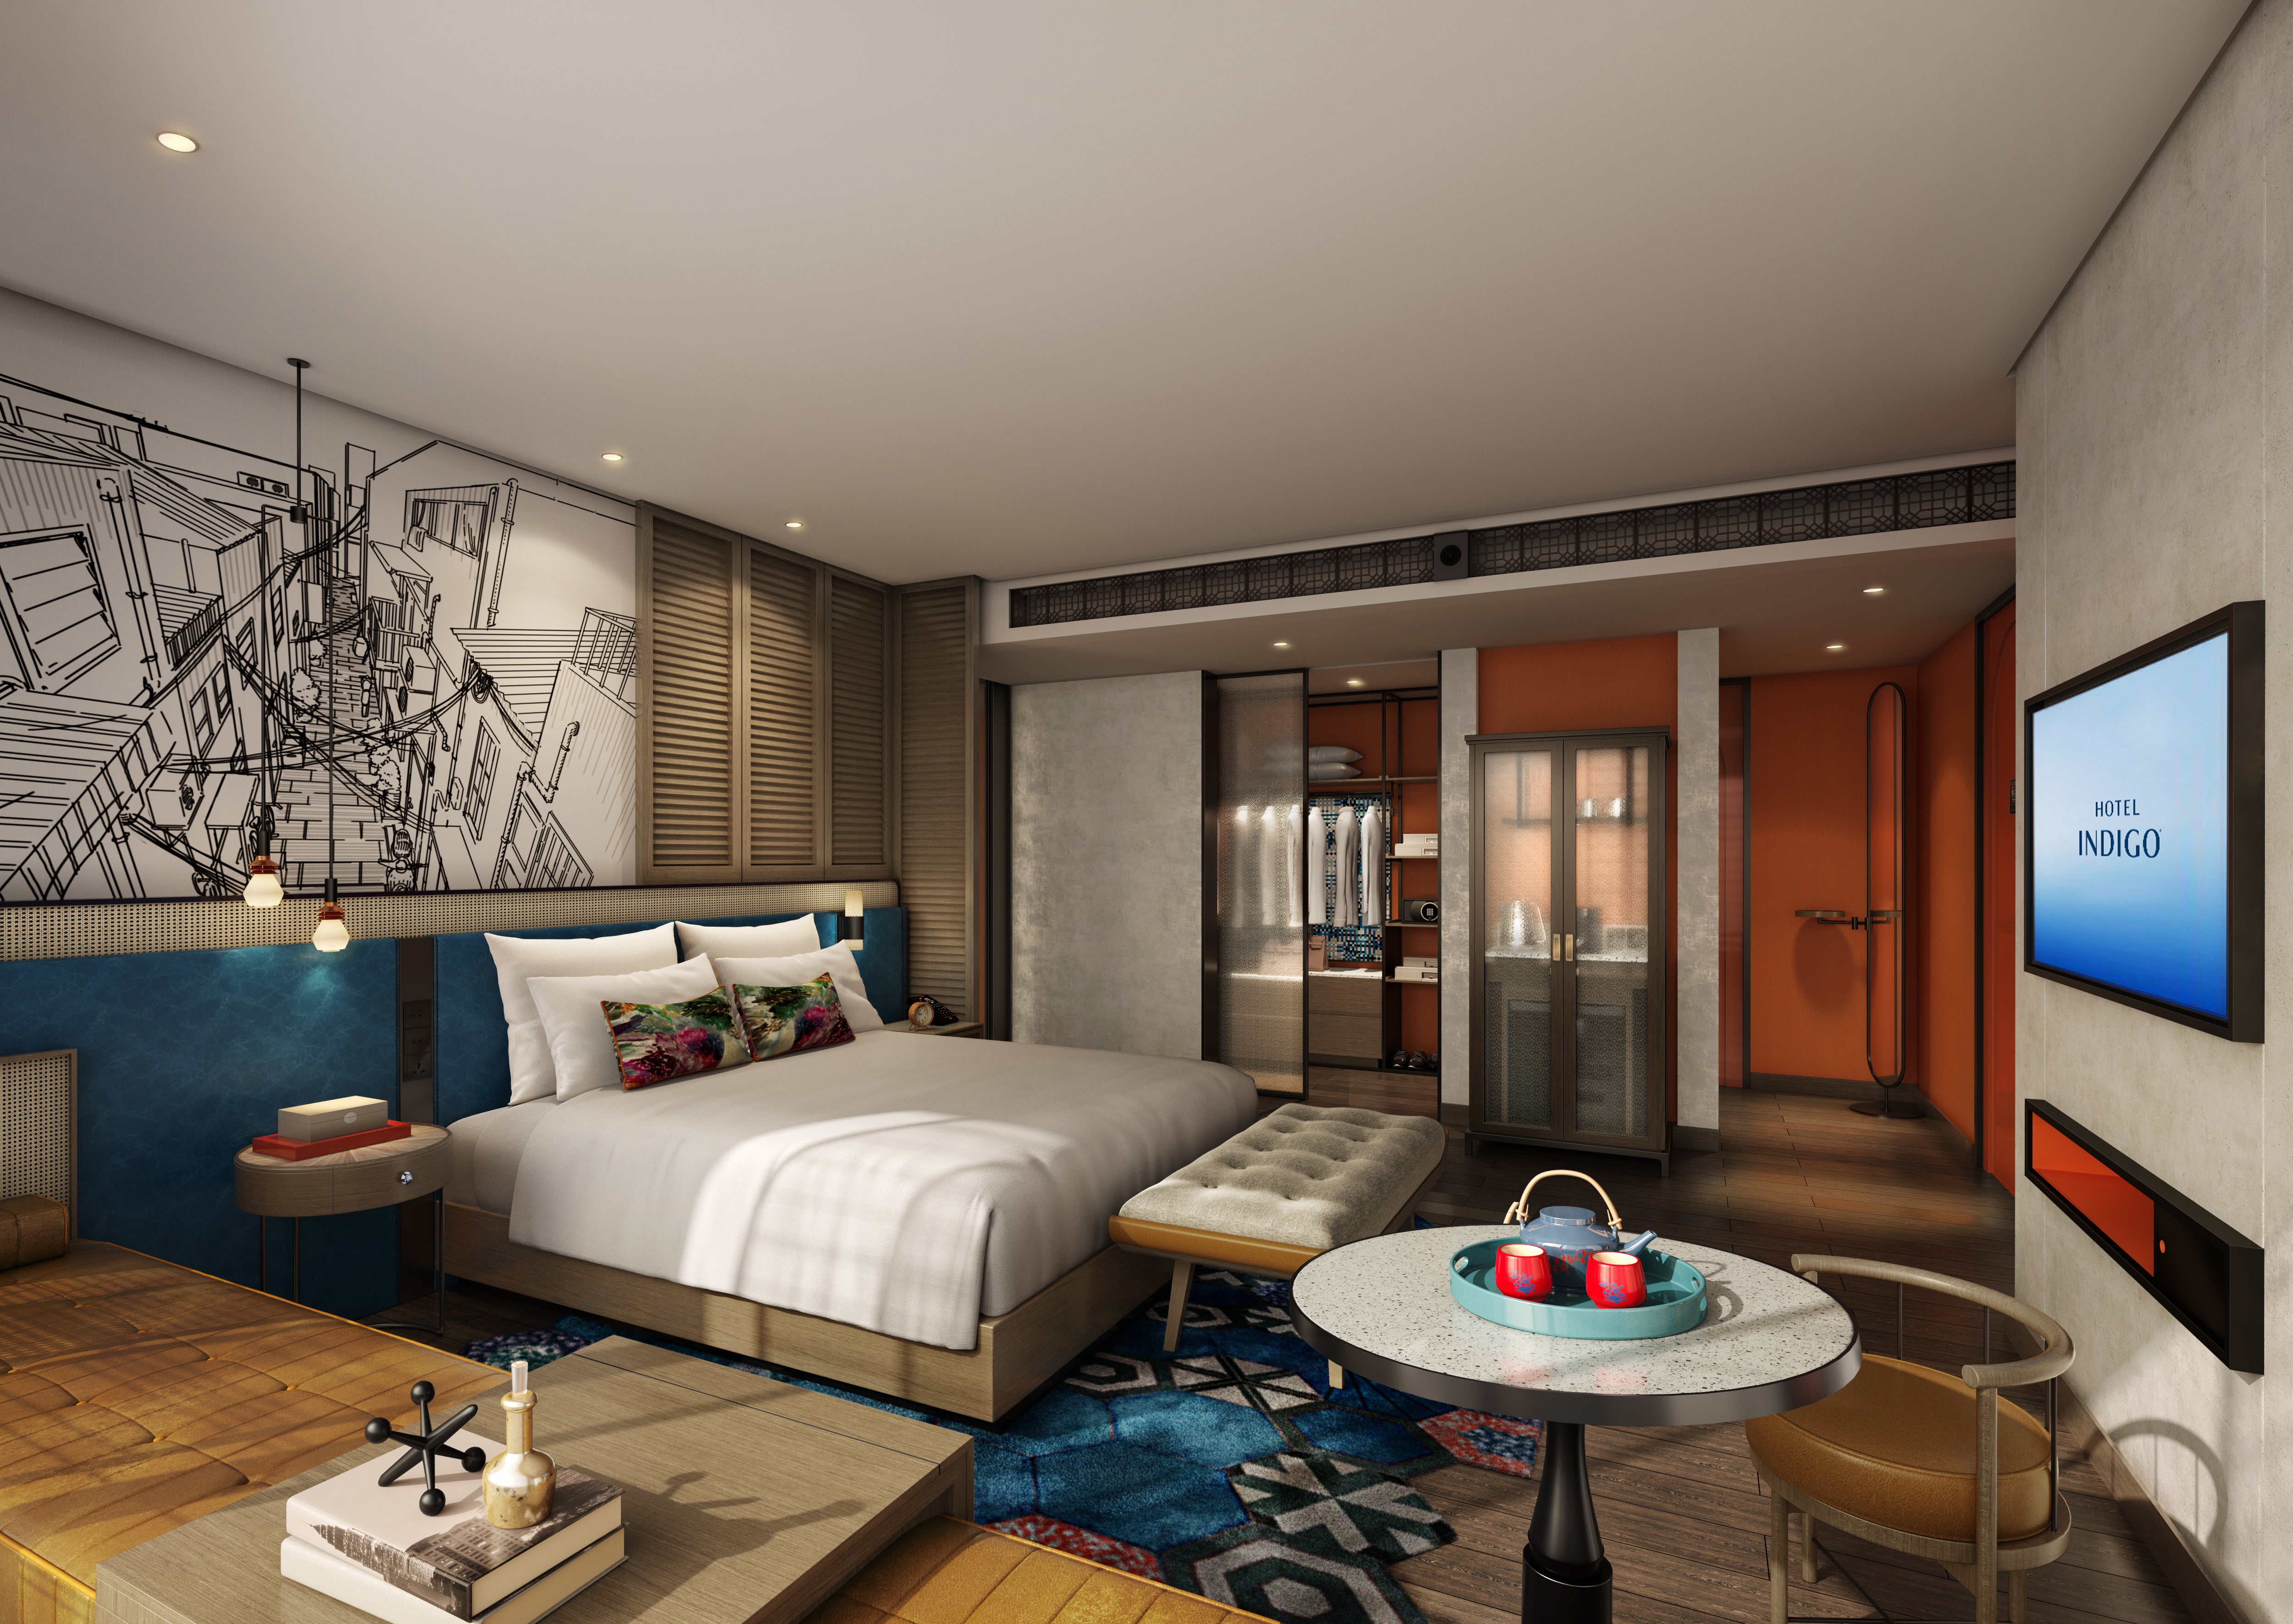 IHG Hotels & Resorts to Double Portfolio in Vietnam by 2028